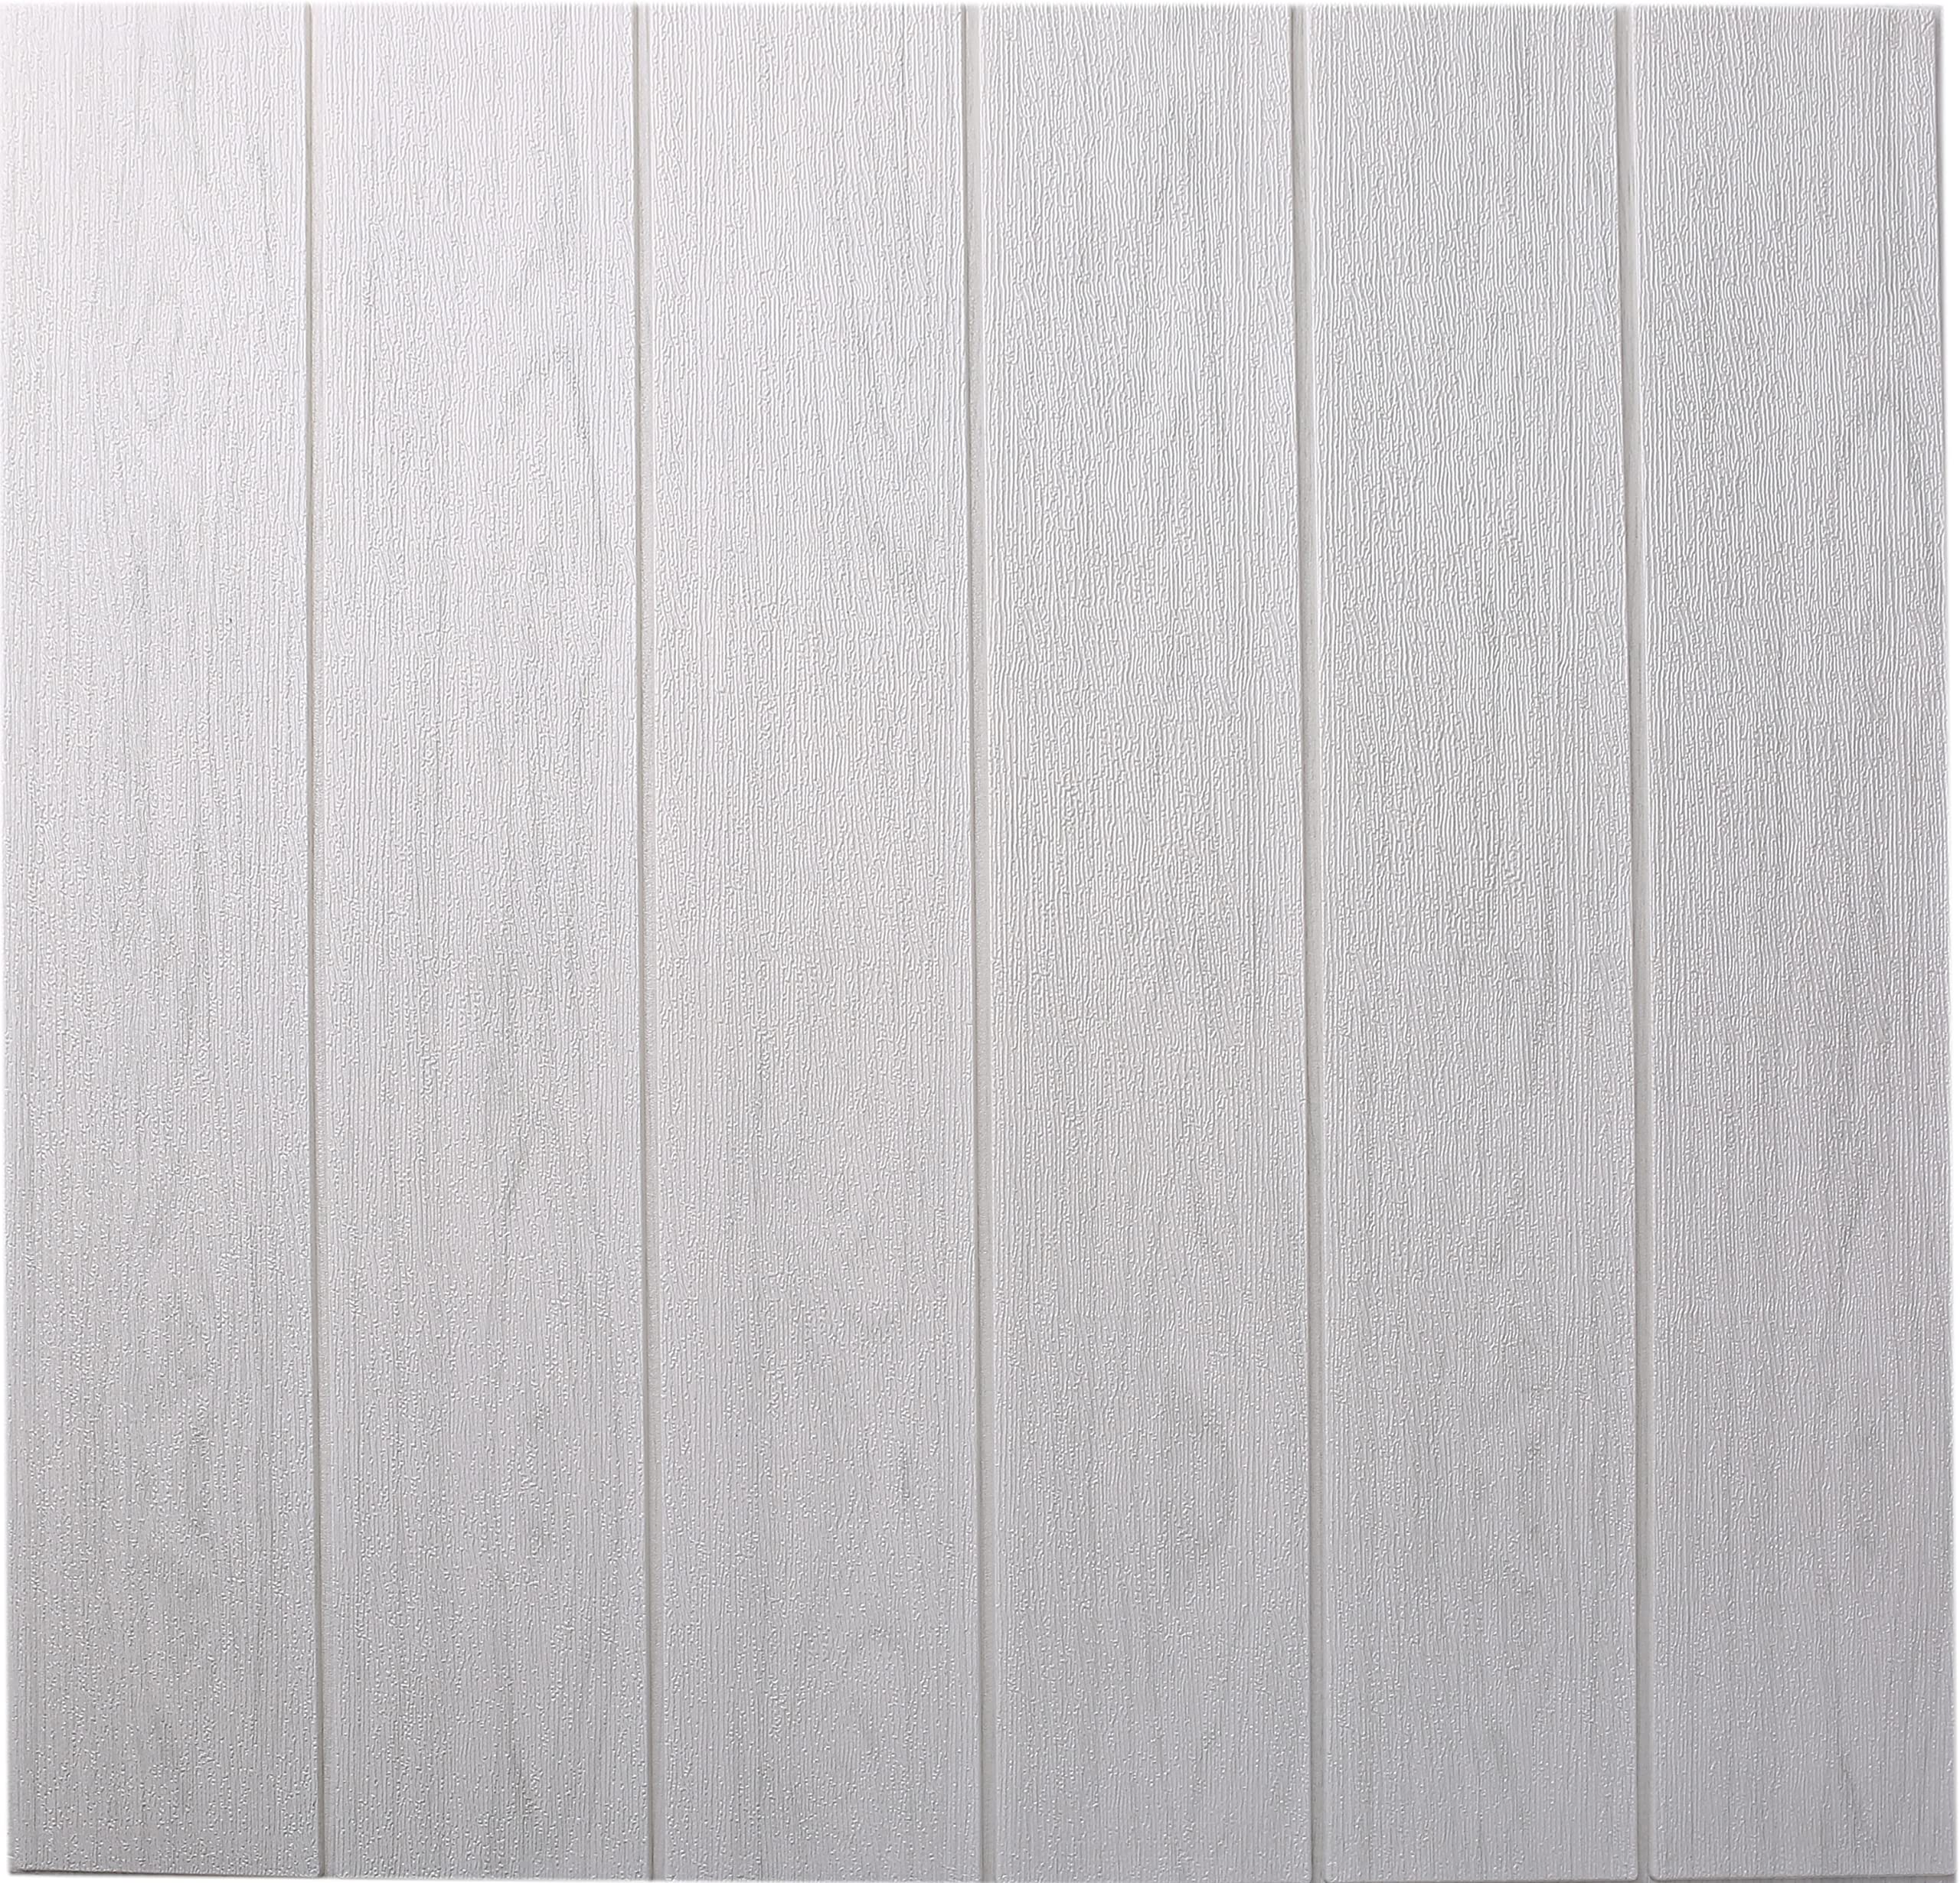 ISL ウォールステッカー 木目調 ホワイトグレー(アルミ仕様) 3Dクッション壁紙 70cm*70cm 60枚セット